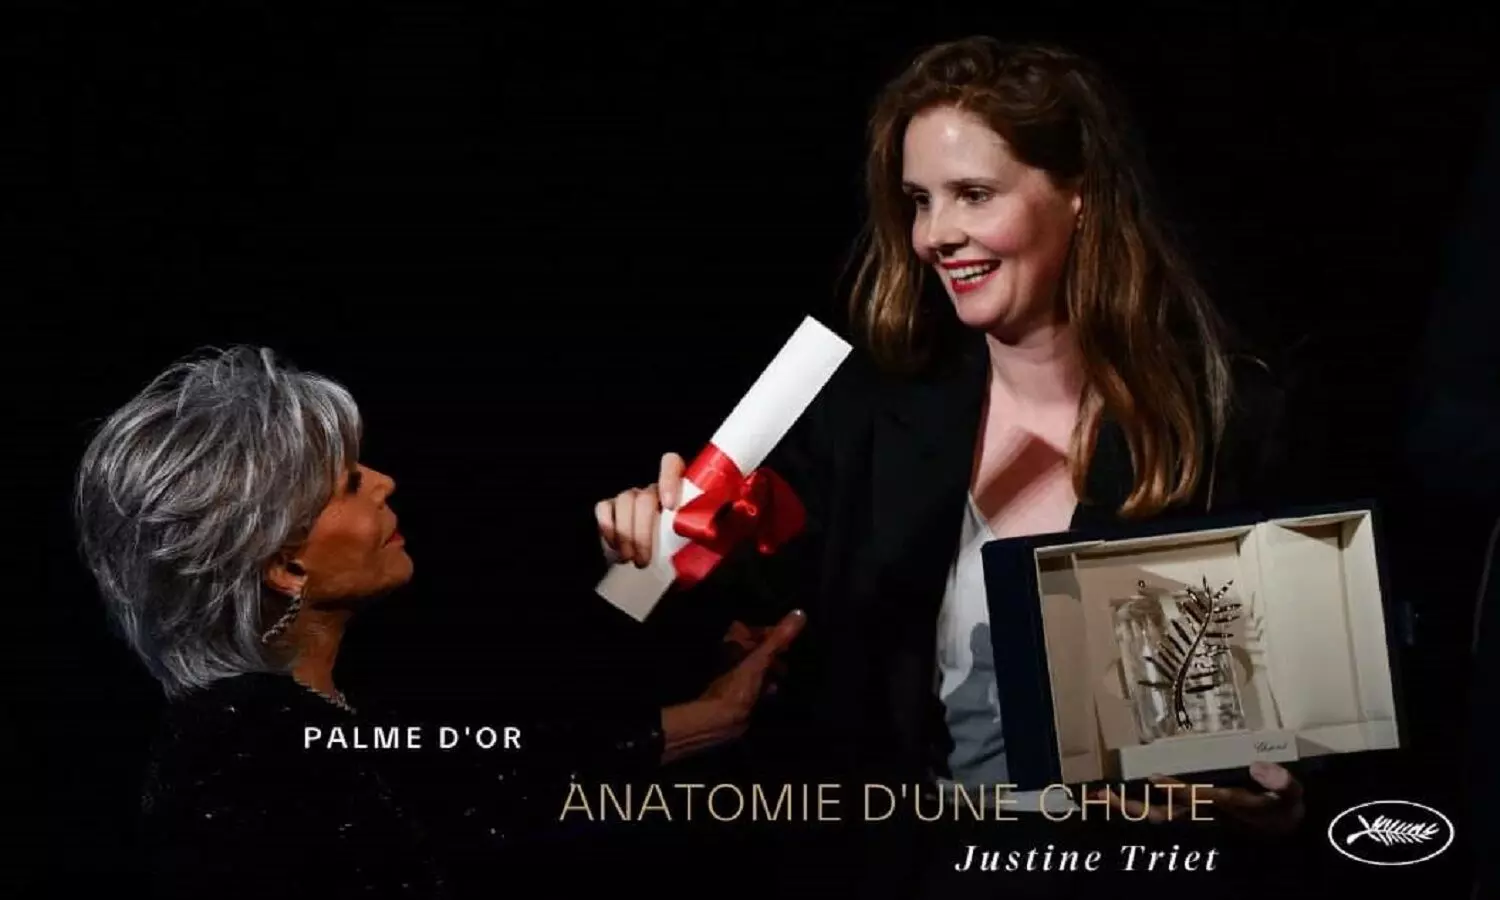 76 वां कान फिल्म समारोह : फ्रांस की जस्टिन ट्रीएट की फिल्म  एनाटोमी आफ ए फाल  को मिला बेस्ट फिल्म का  पाम डि ओर  पुरस्कार